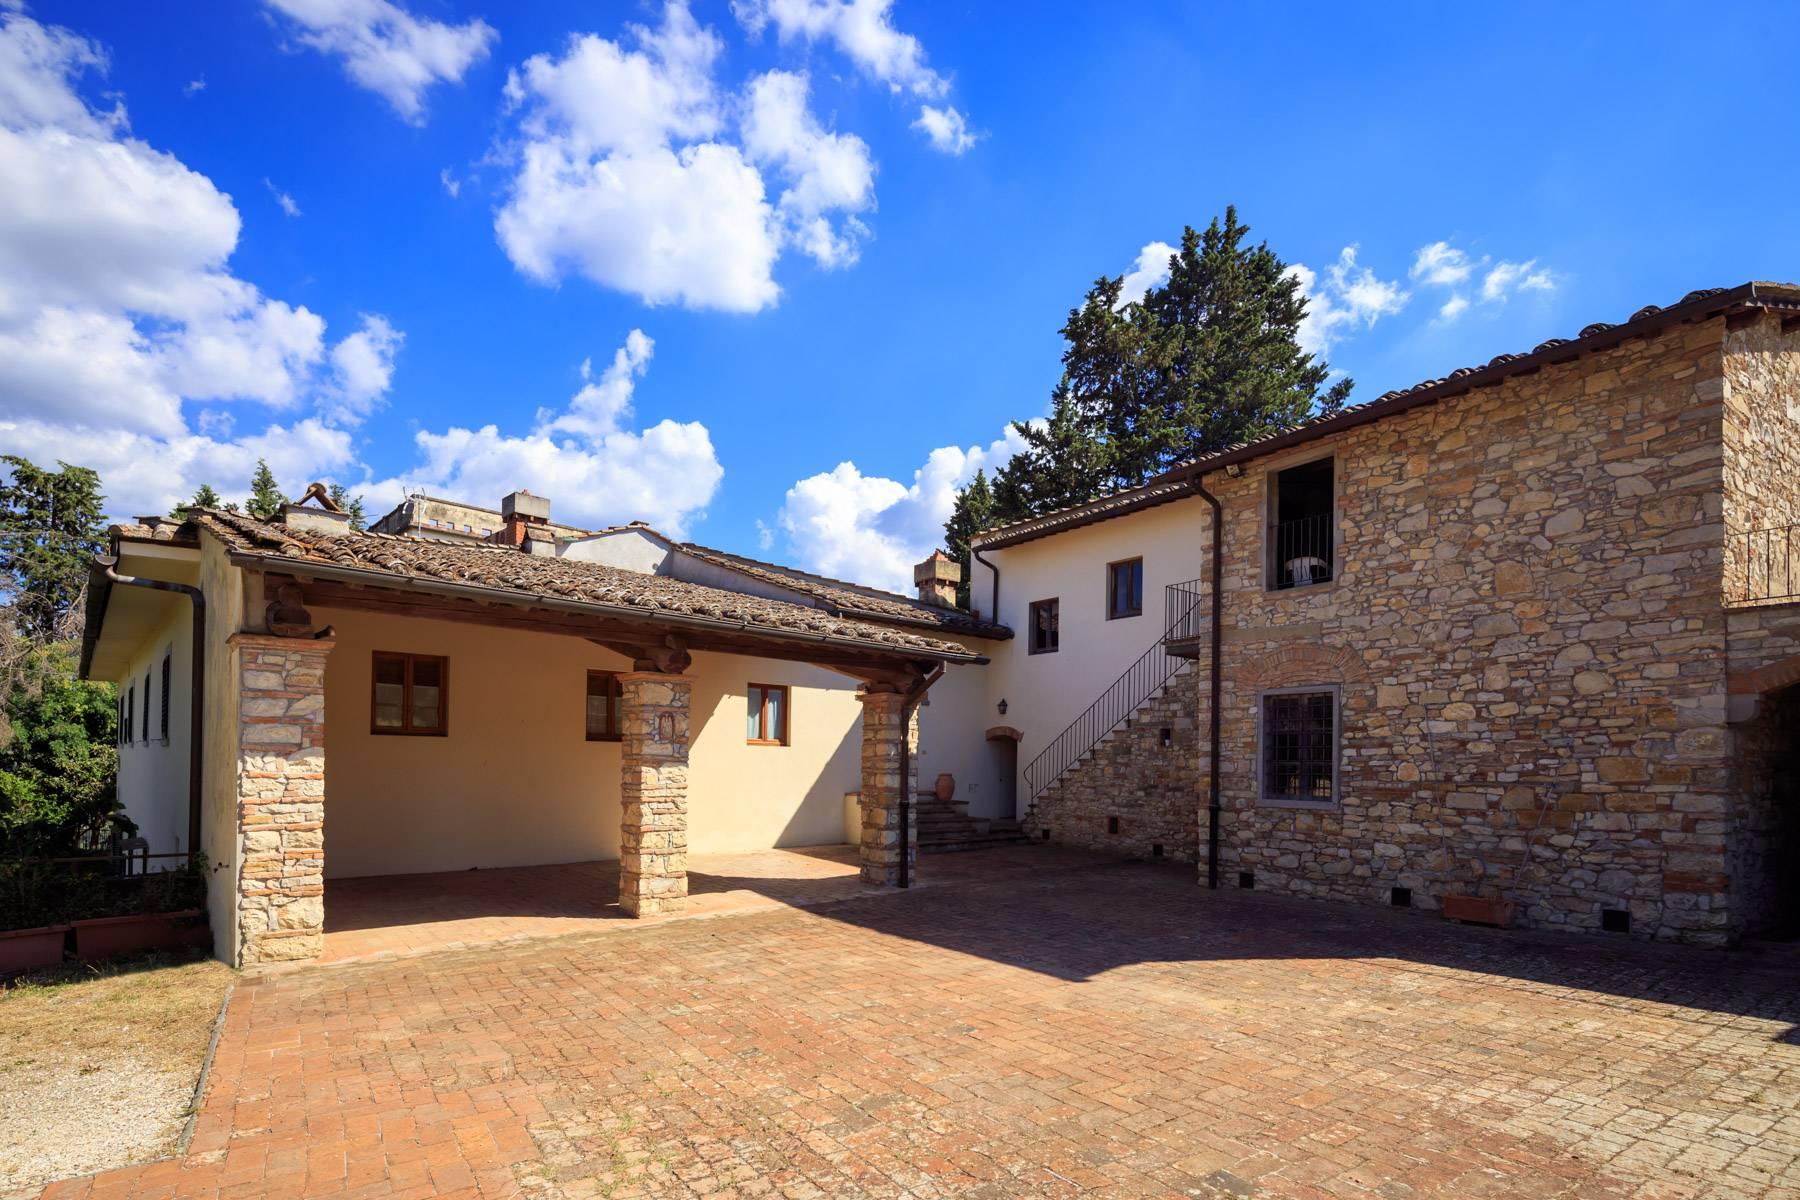 Grande villa antica con oliveto a 10 minuti da Firenze - 17